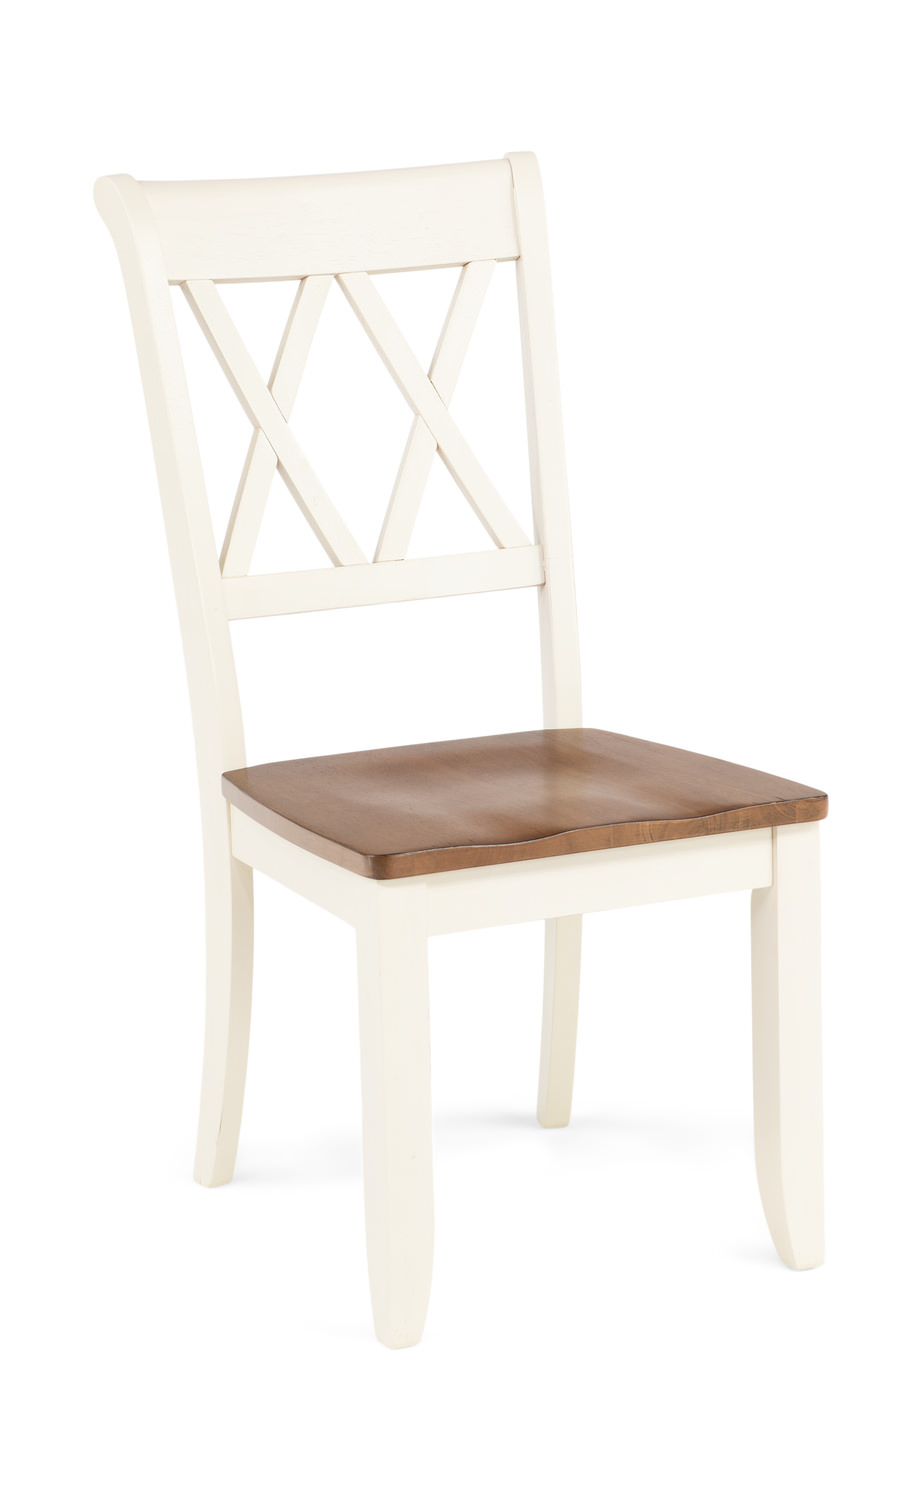 Hamilton chair